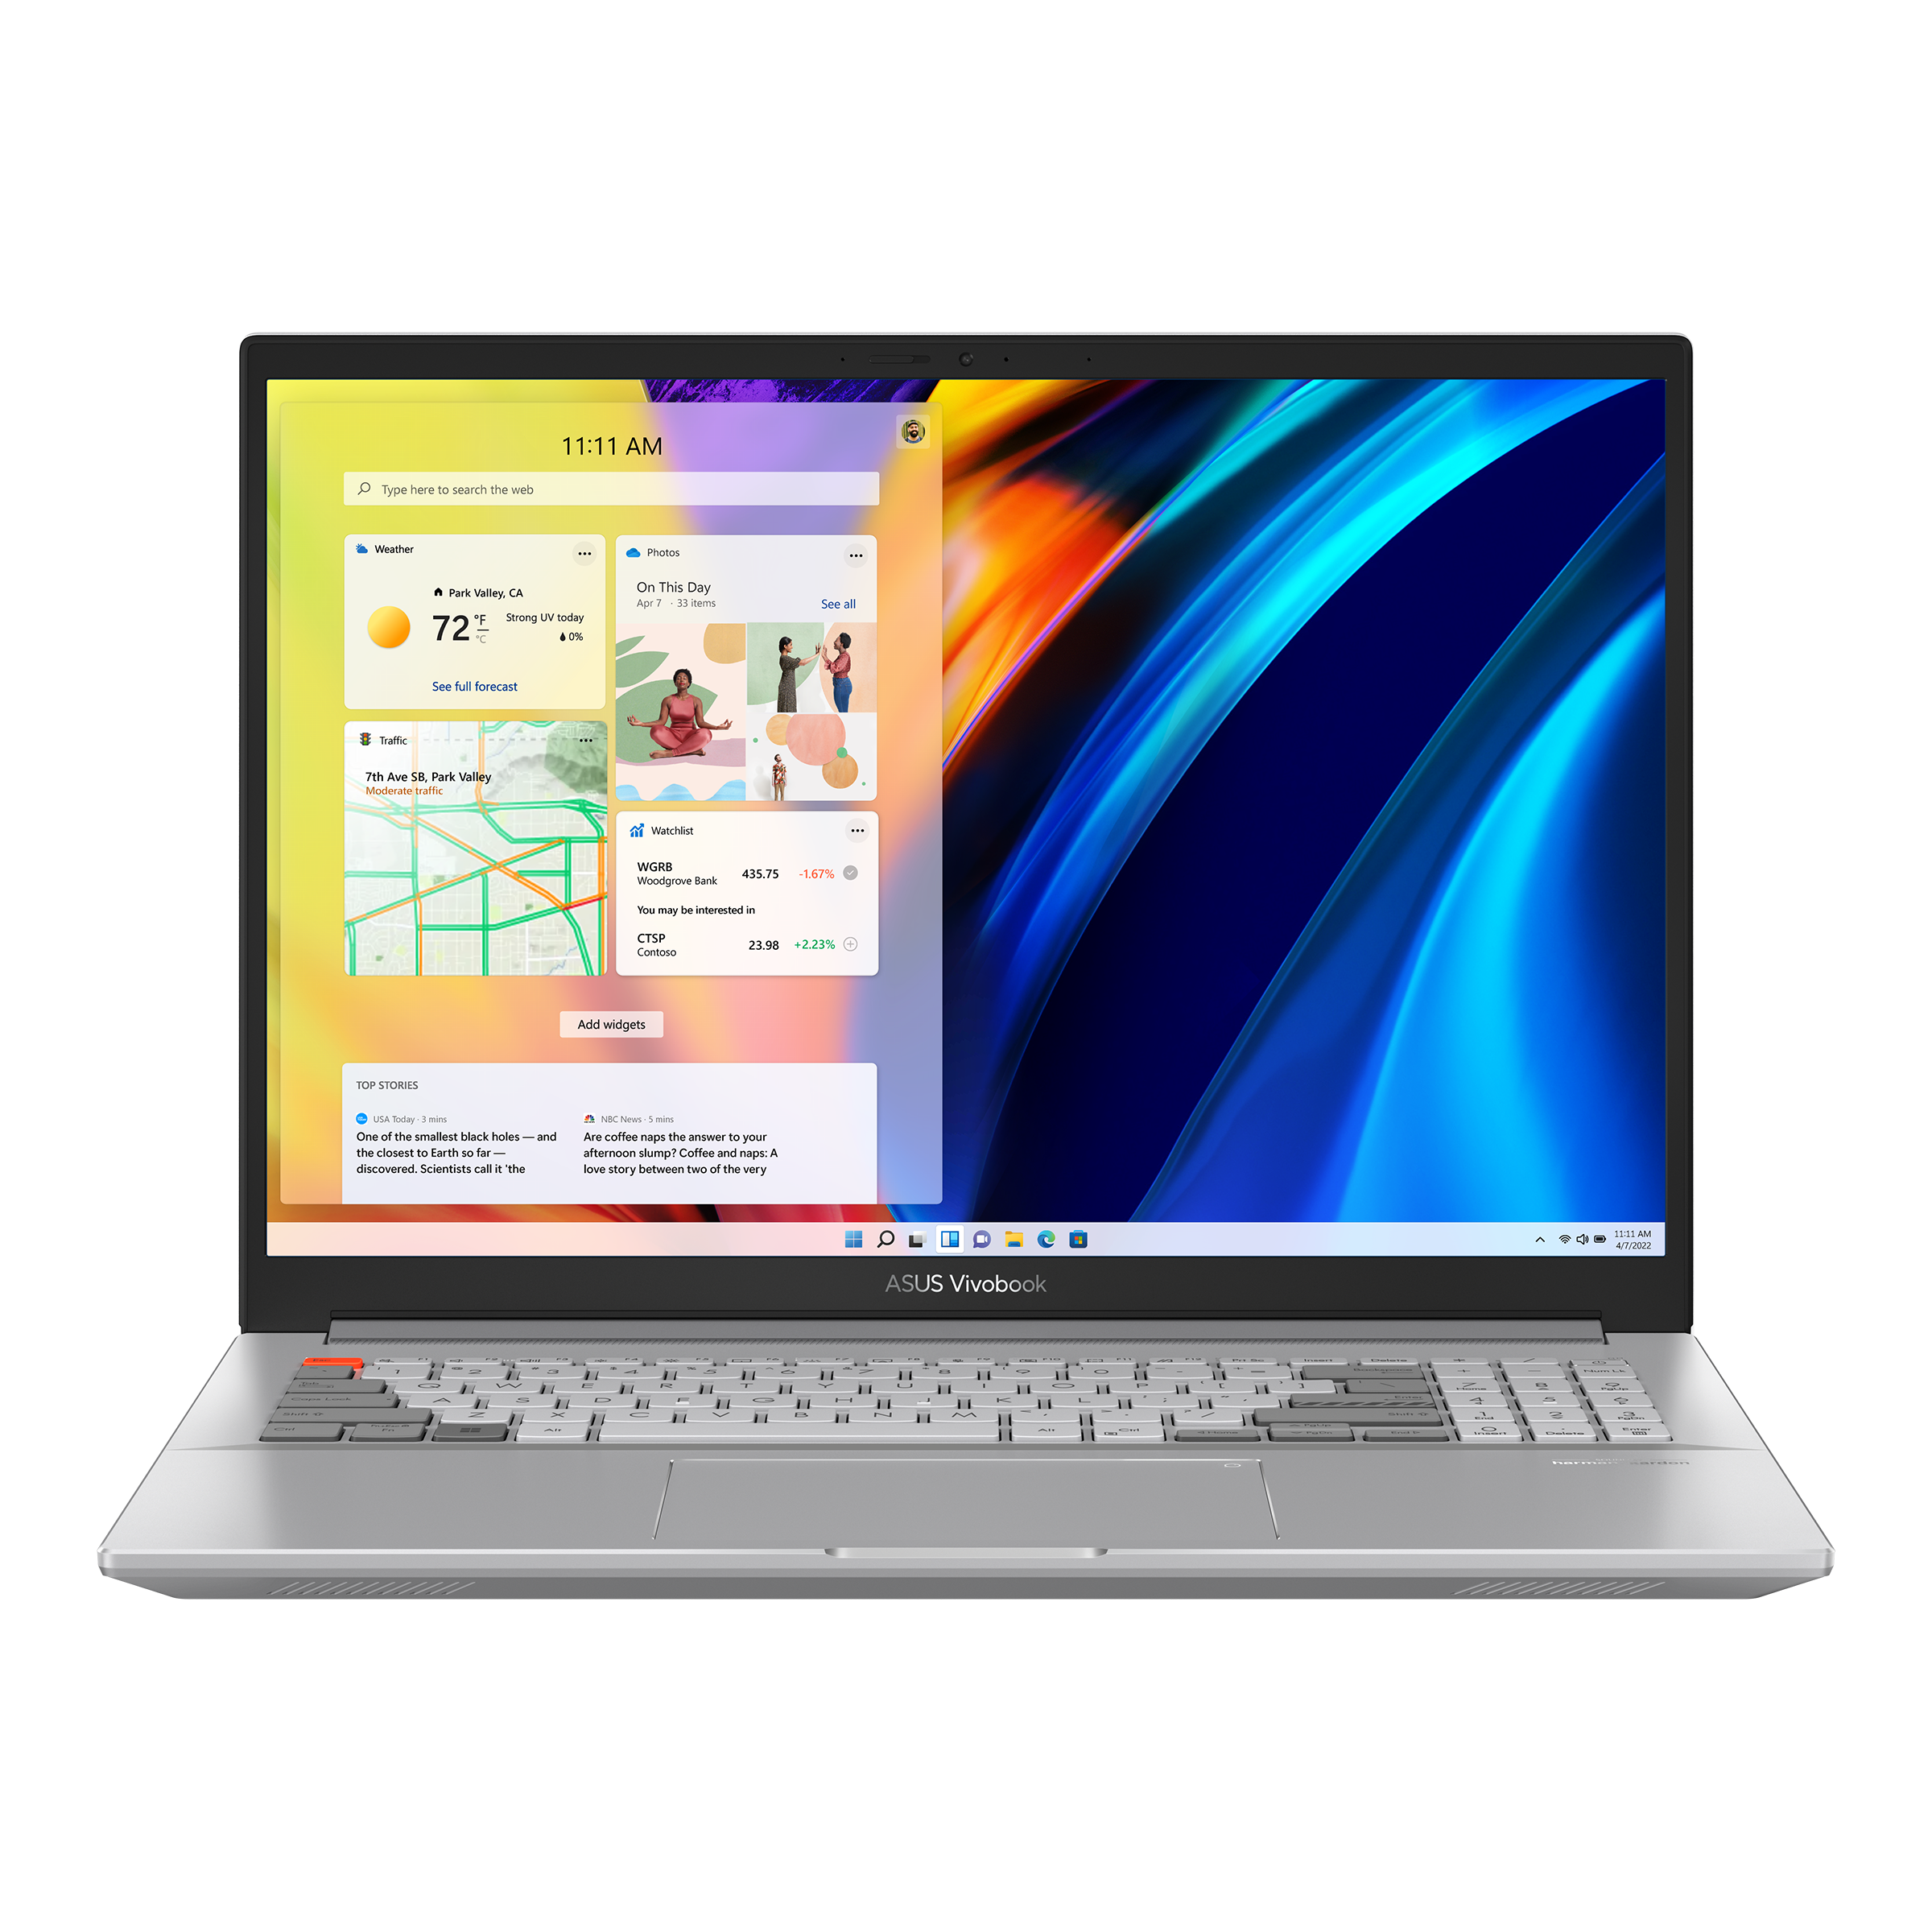 Notebook + Monitor HP: La solución perfecta para vos < HP TECH